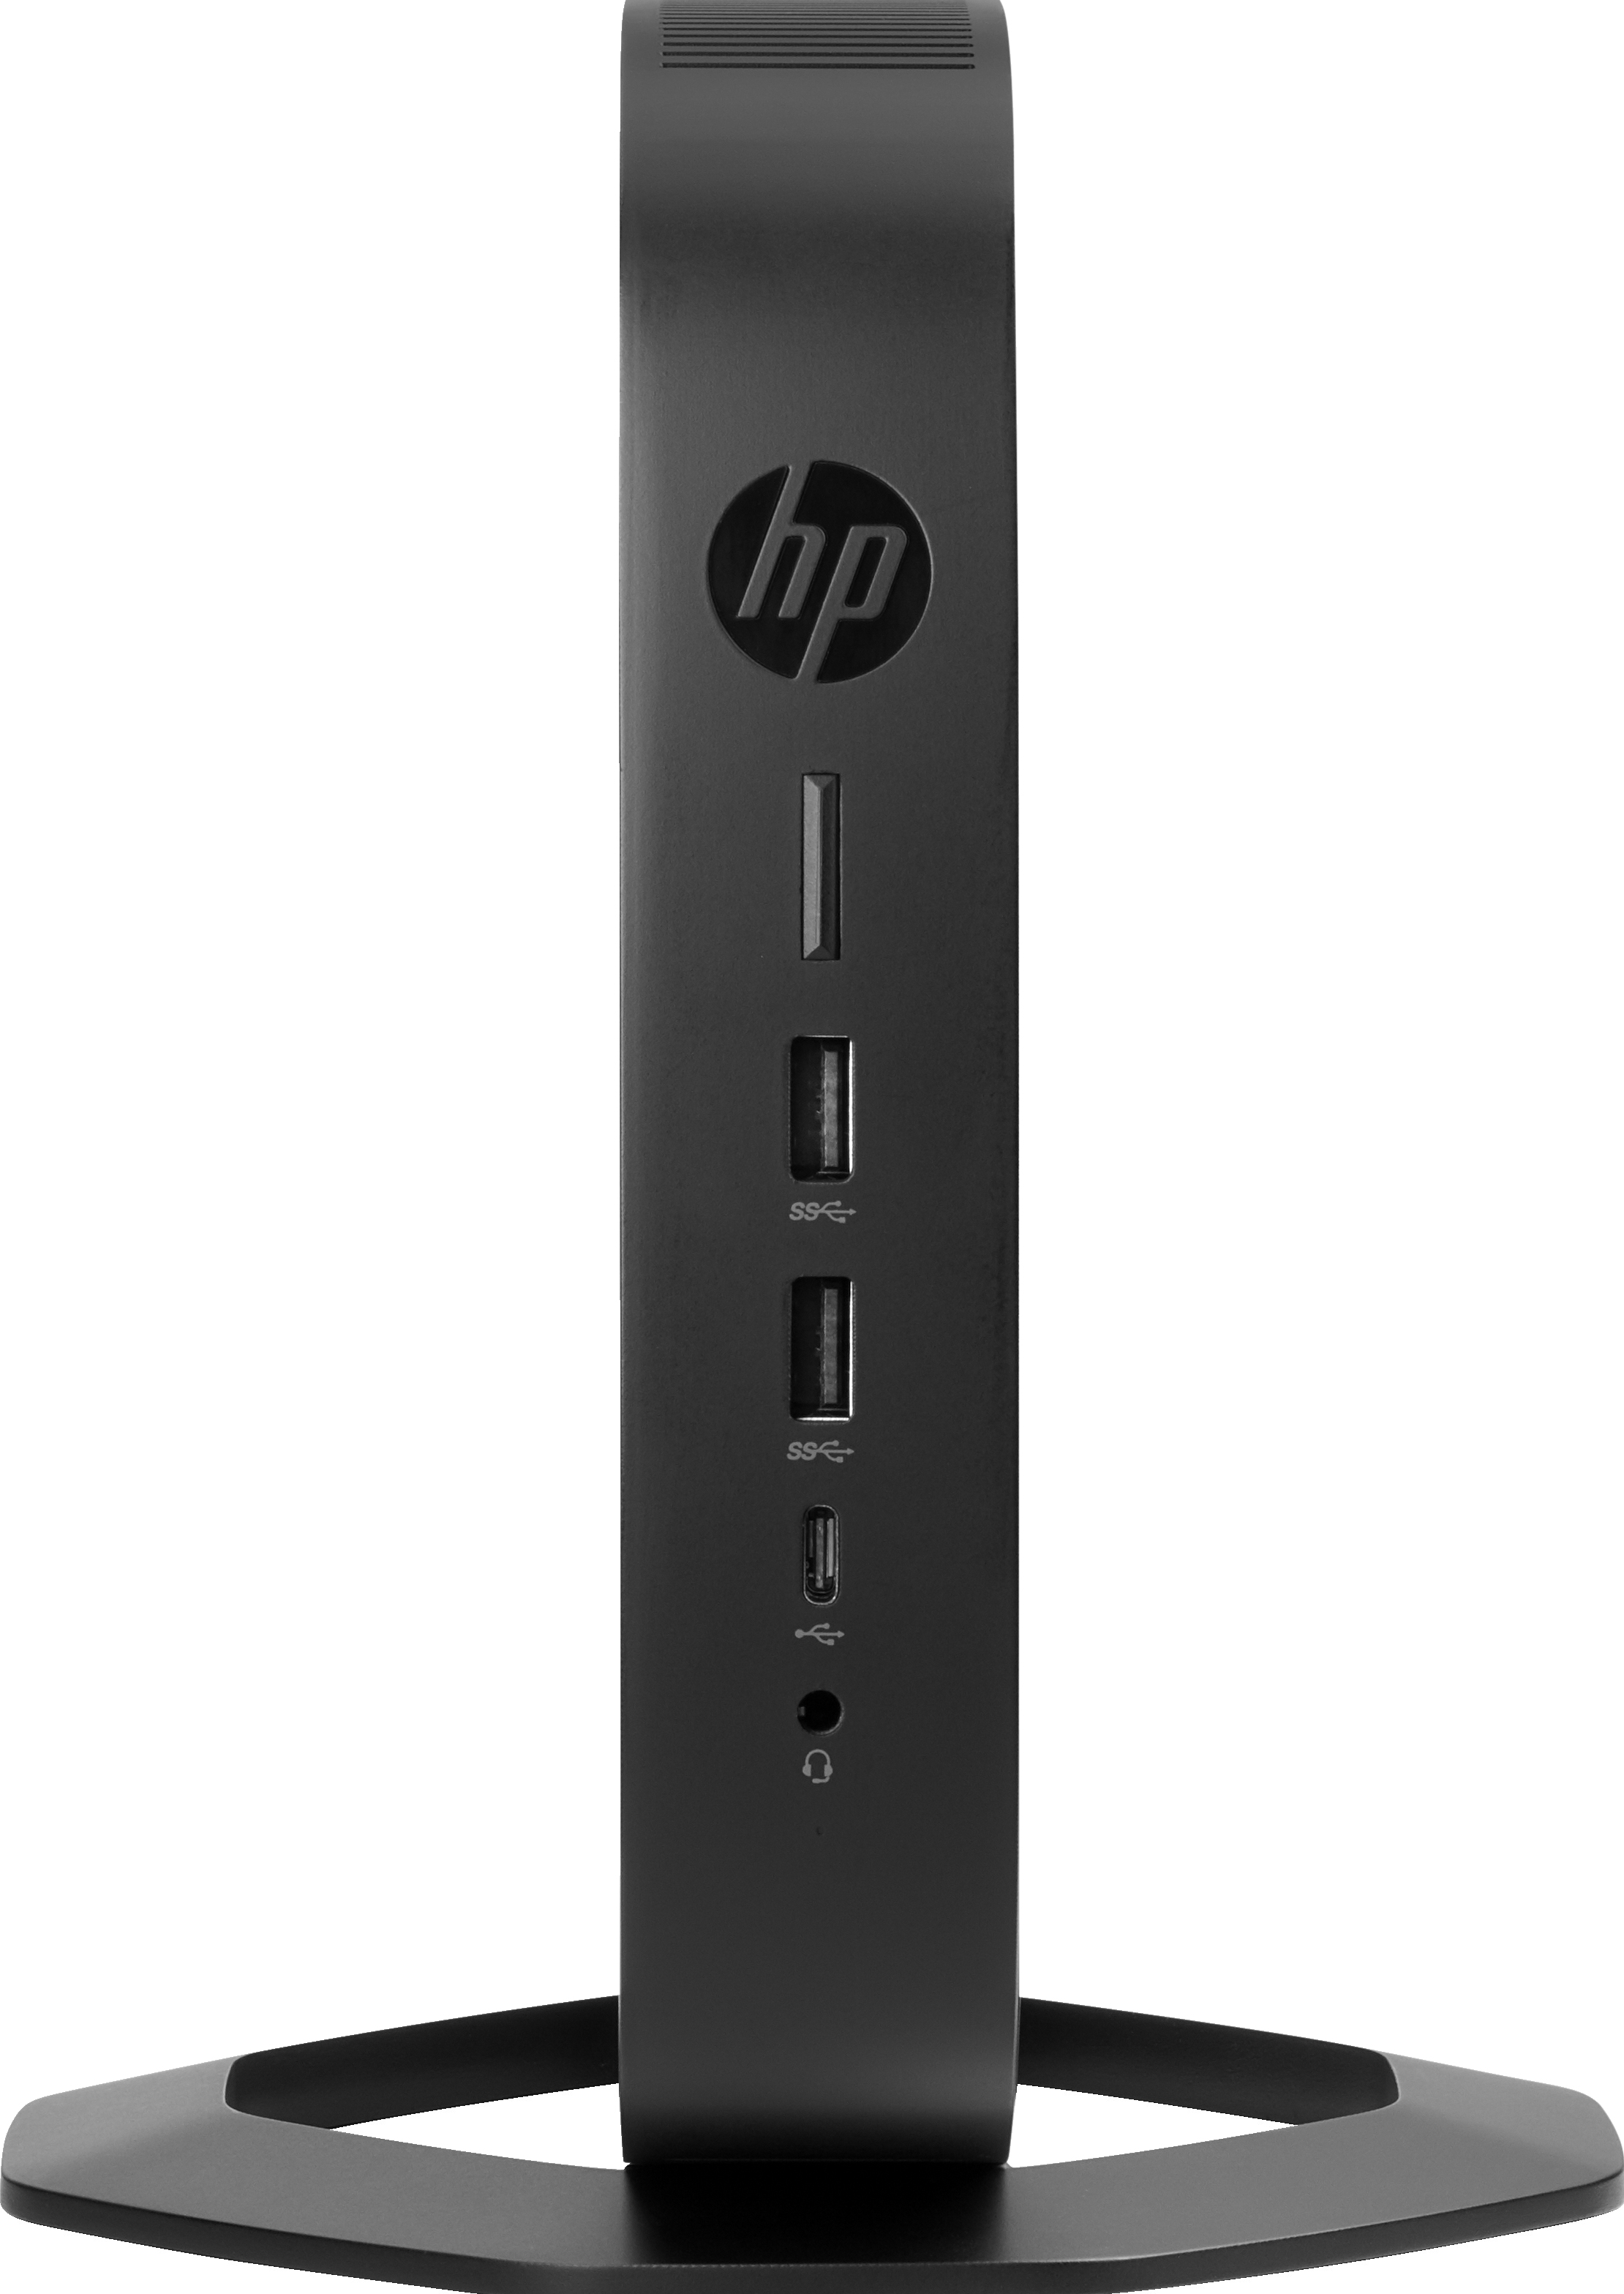 HP t640 - Thin client